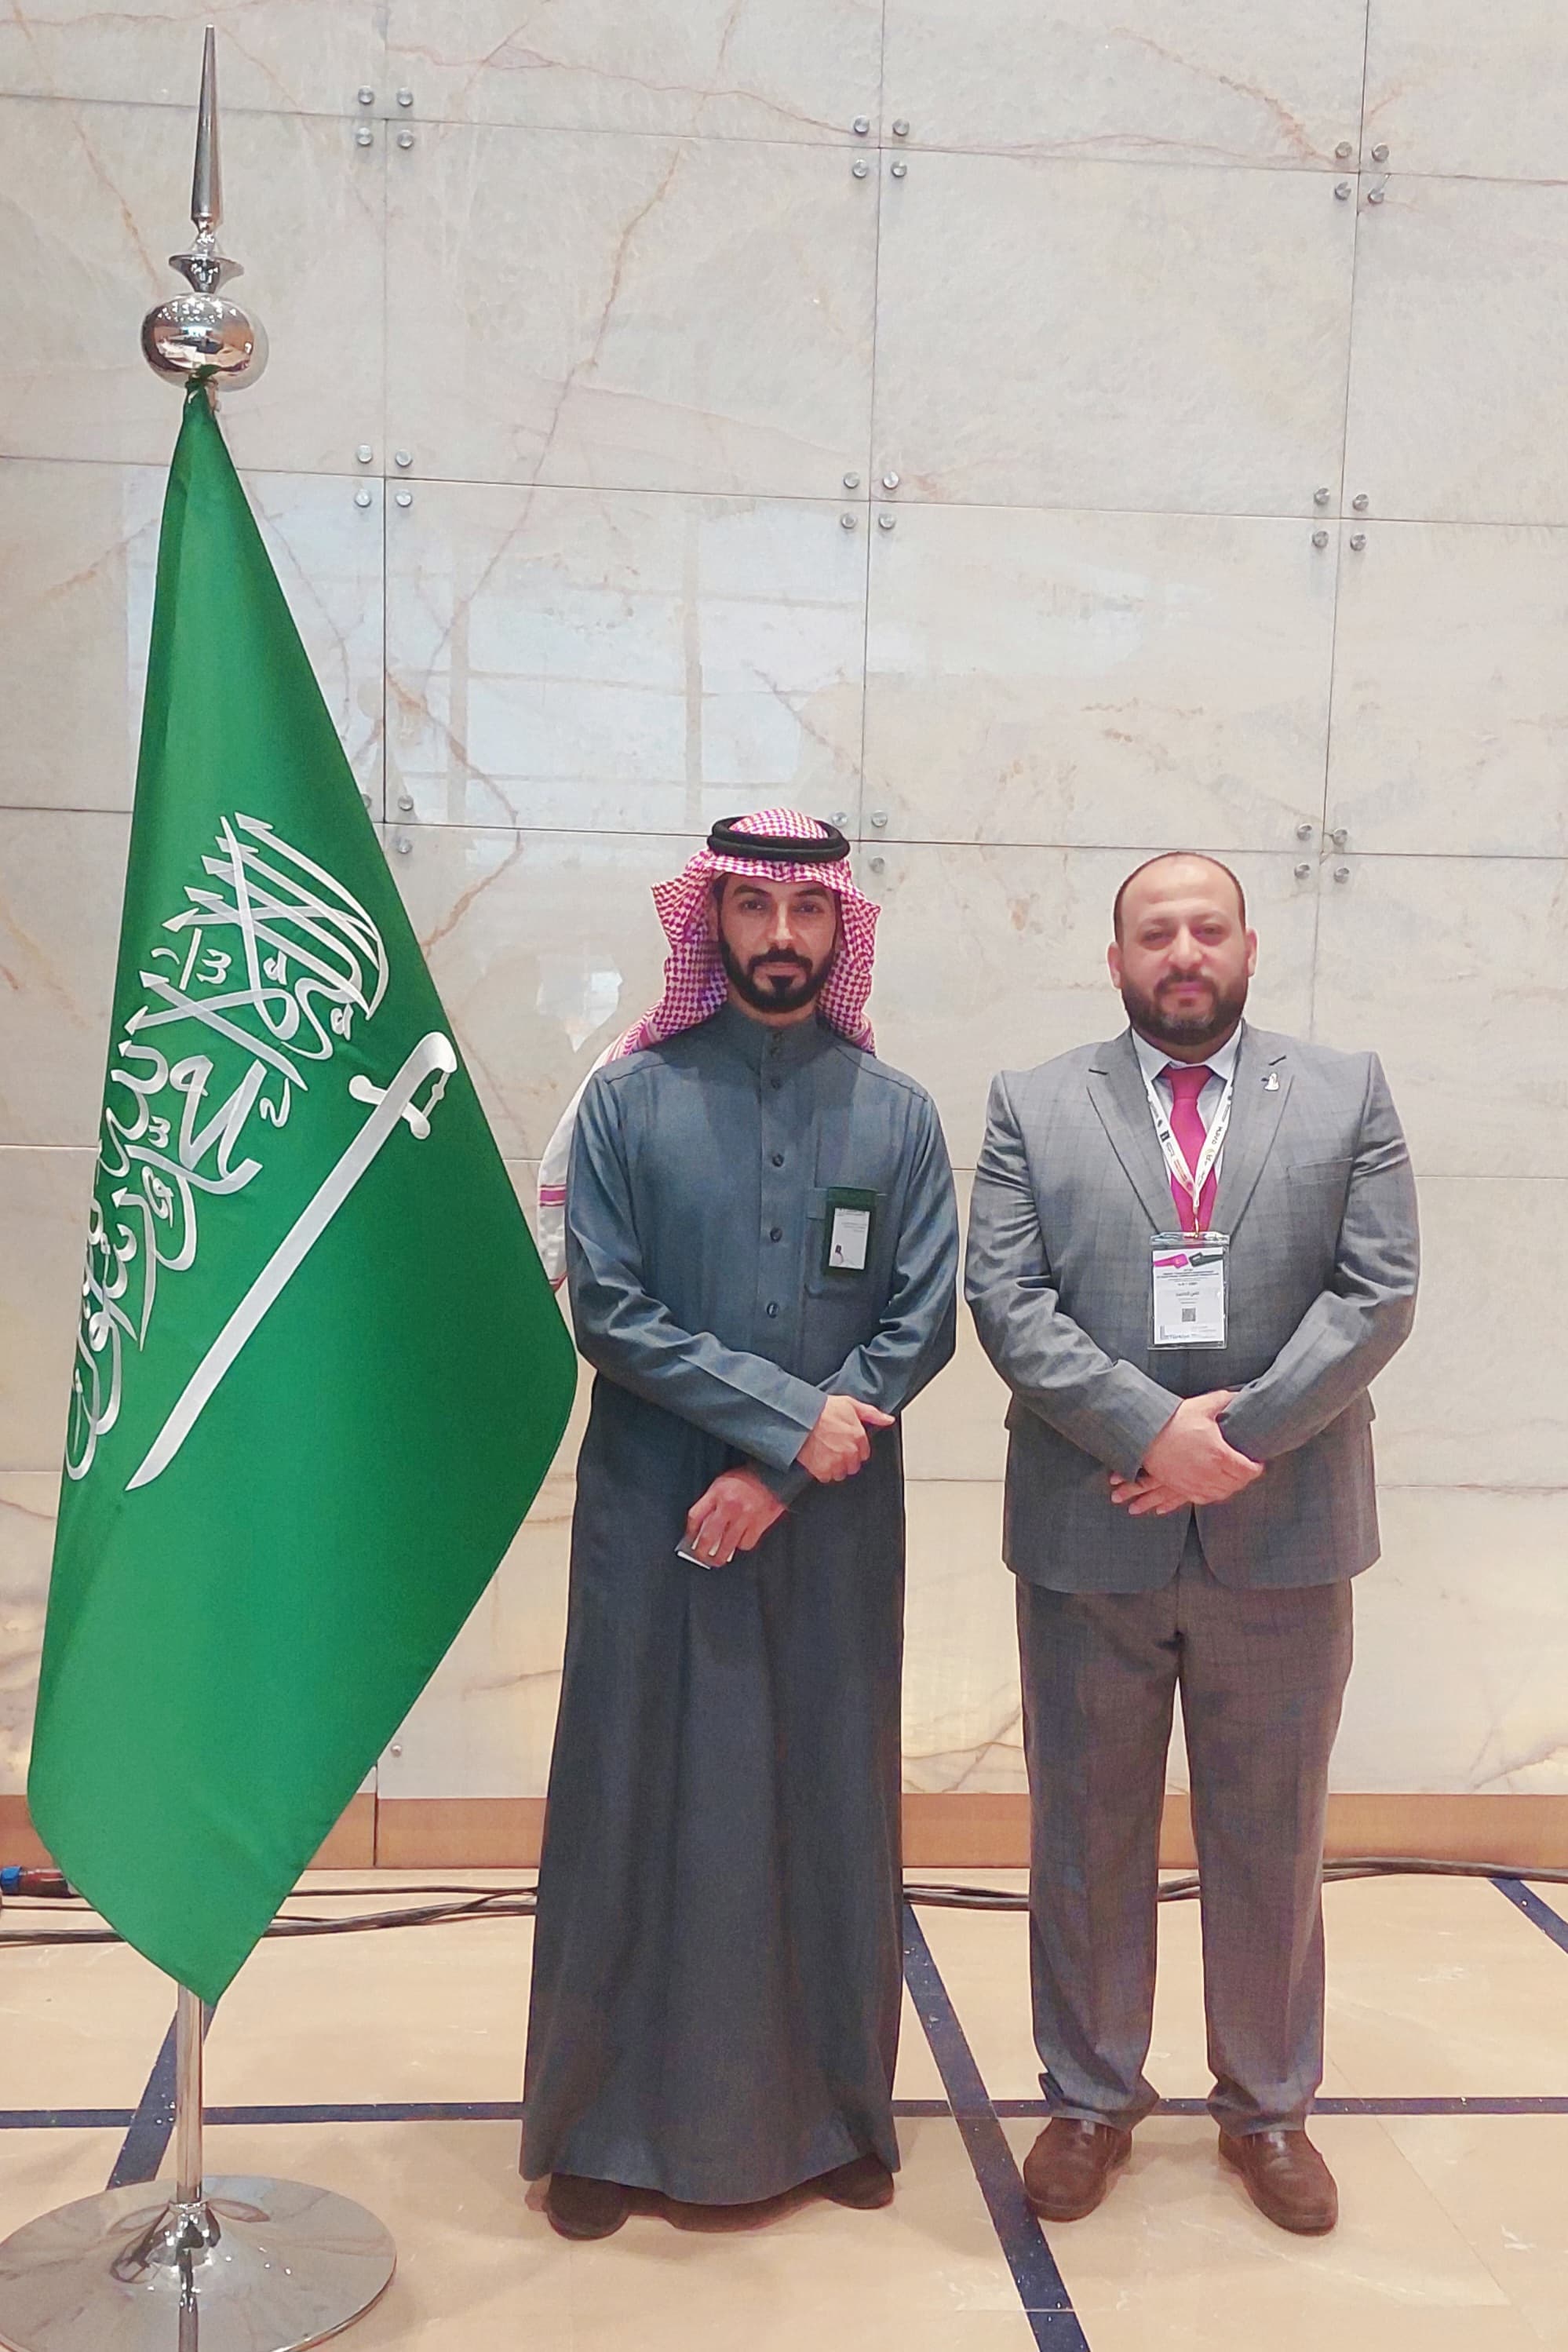  منتدى الأعمال السعودي التركي ينطلق في الرياض